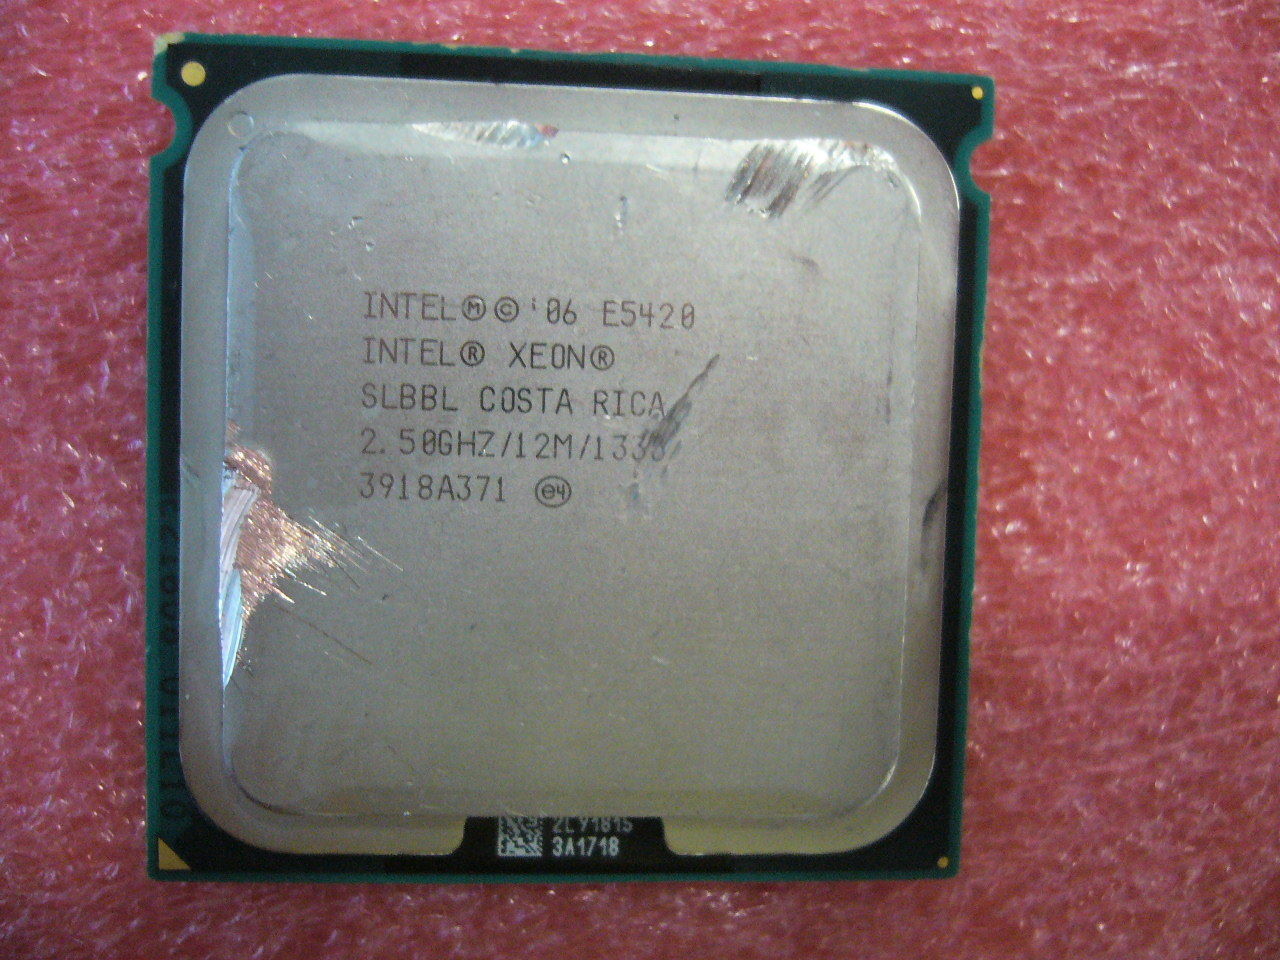 QTY 1x Intel Xeon CPU Quad Core E5420 2.50Ghz/12MB/1333Mhz LGA771 SLBBL